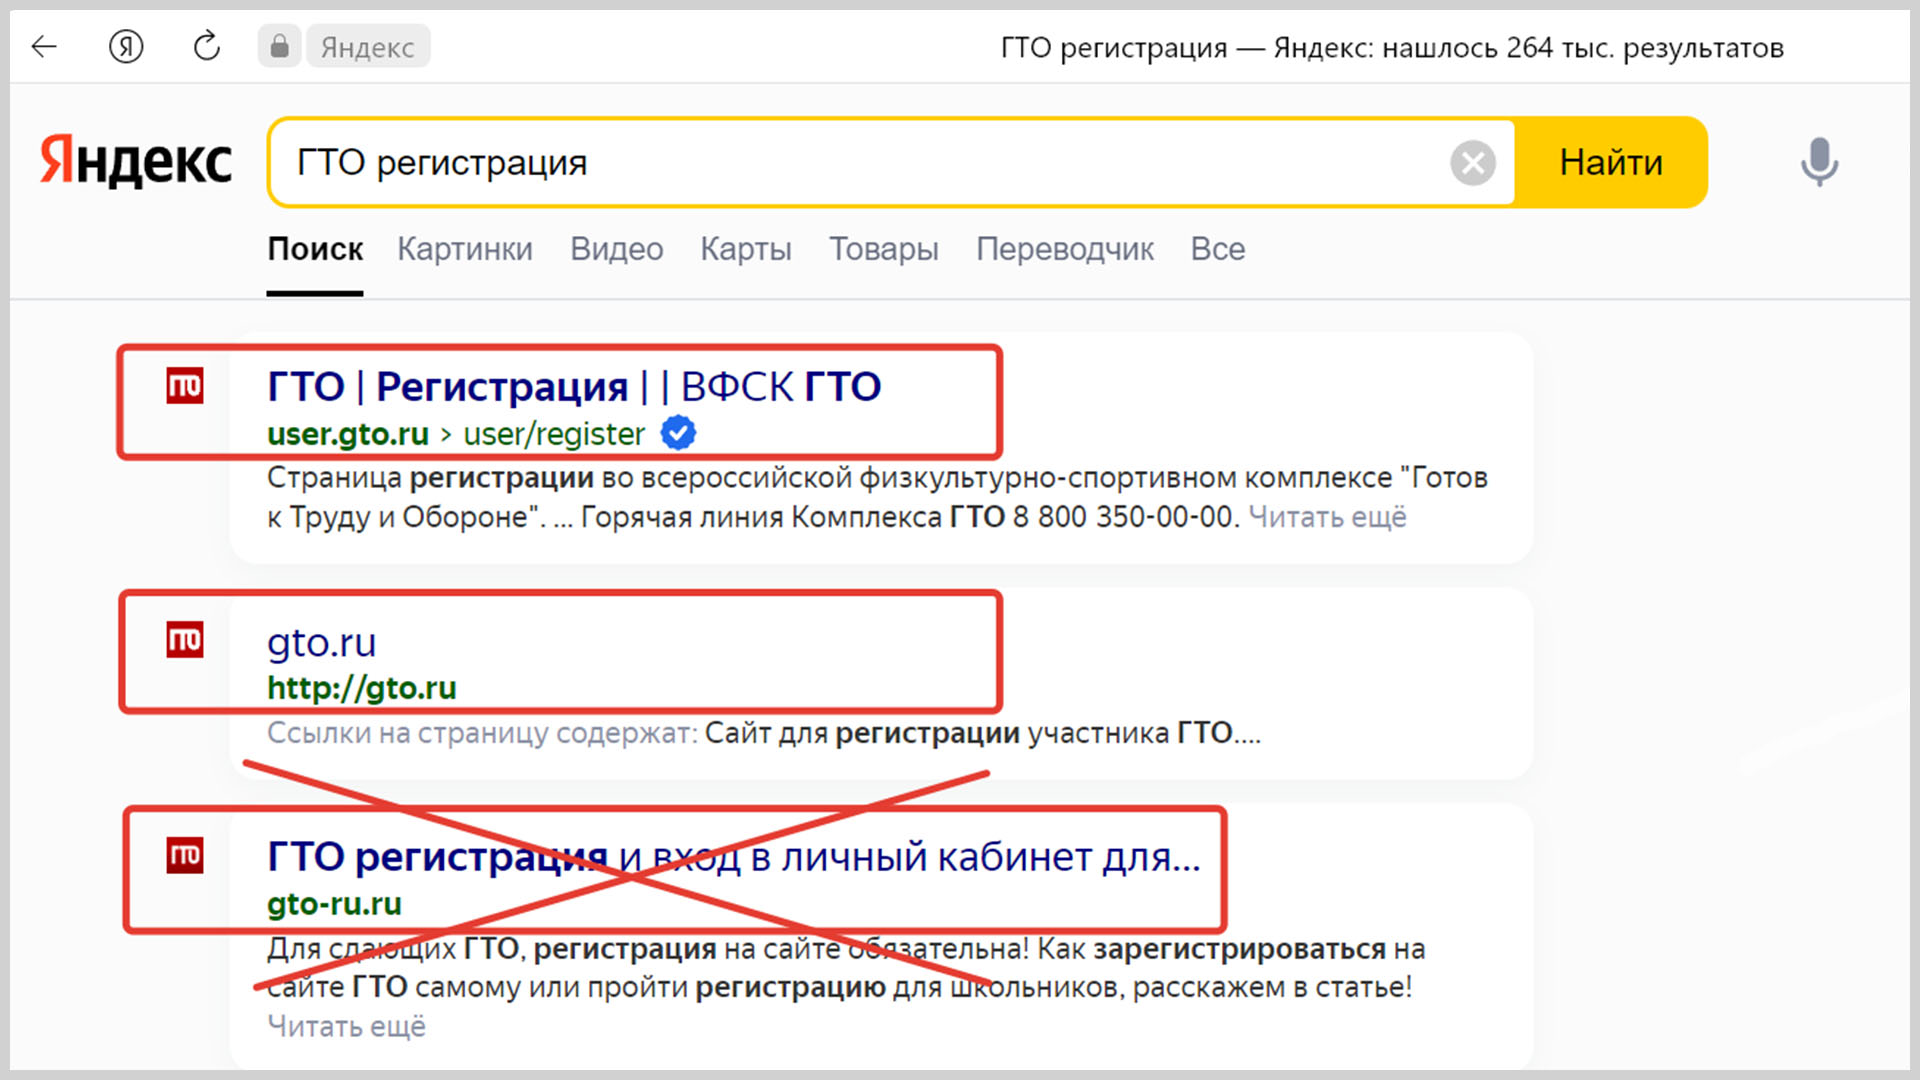 Скриншот окна поисковой системы Яндекс с выдачей по запросу ГТО регистрация.